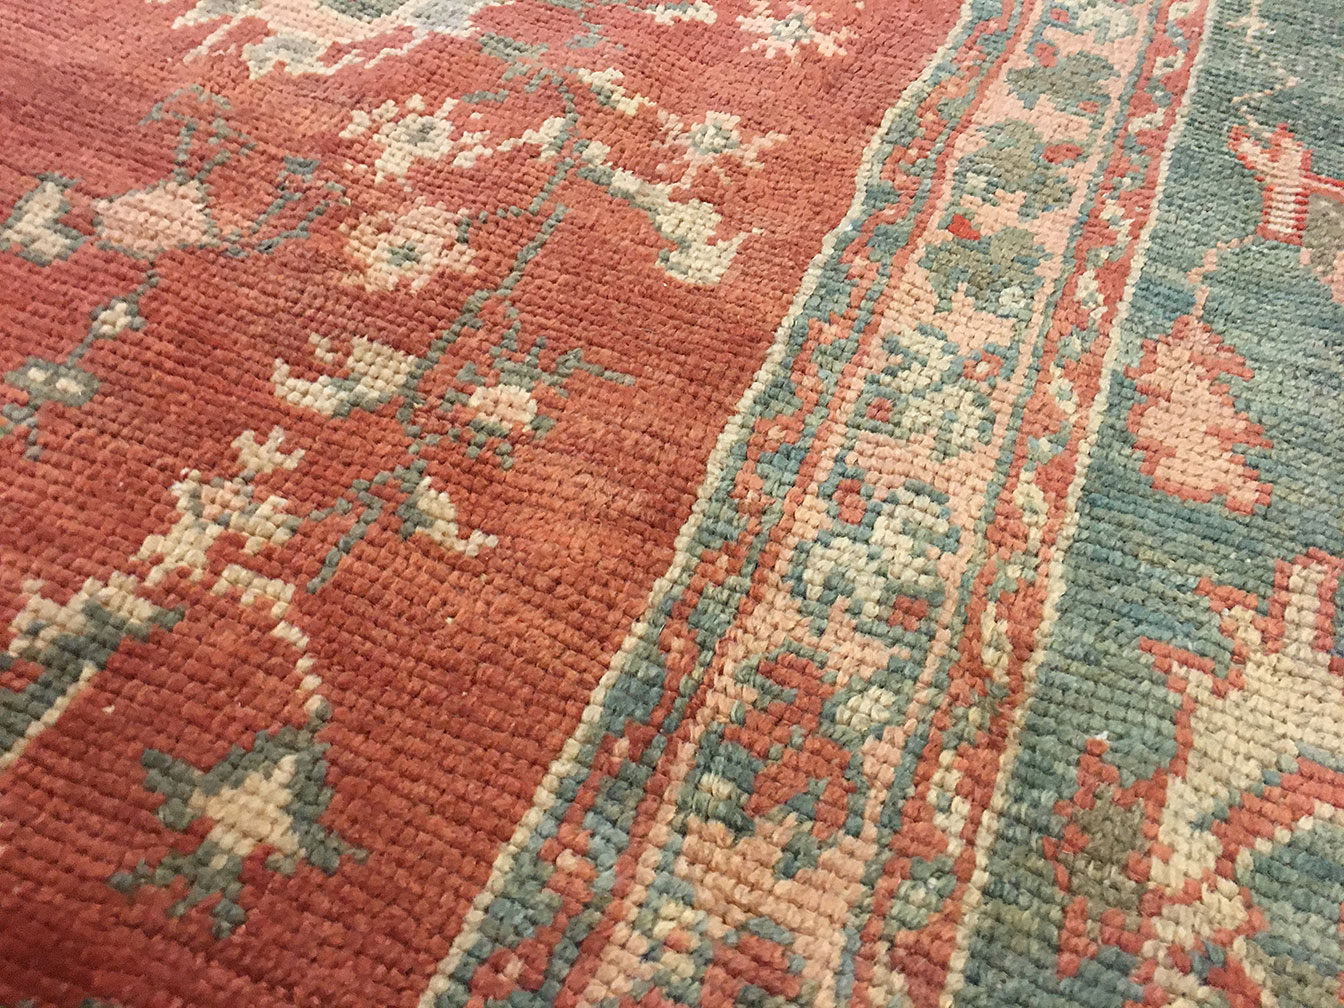 Antique oushak Carpet - # 50545